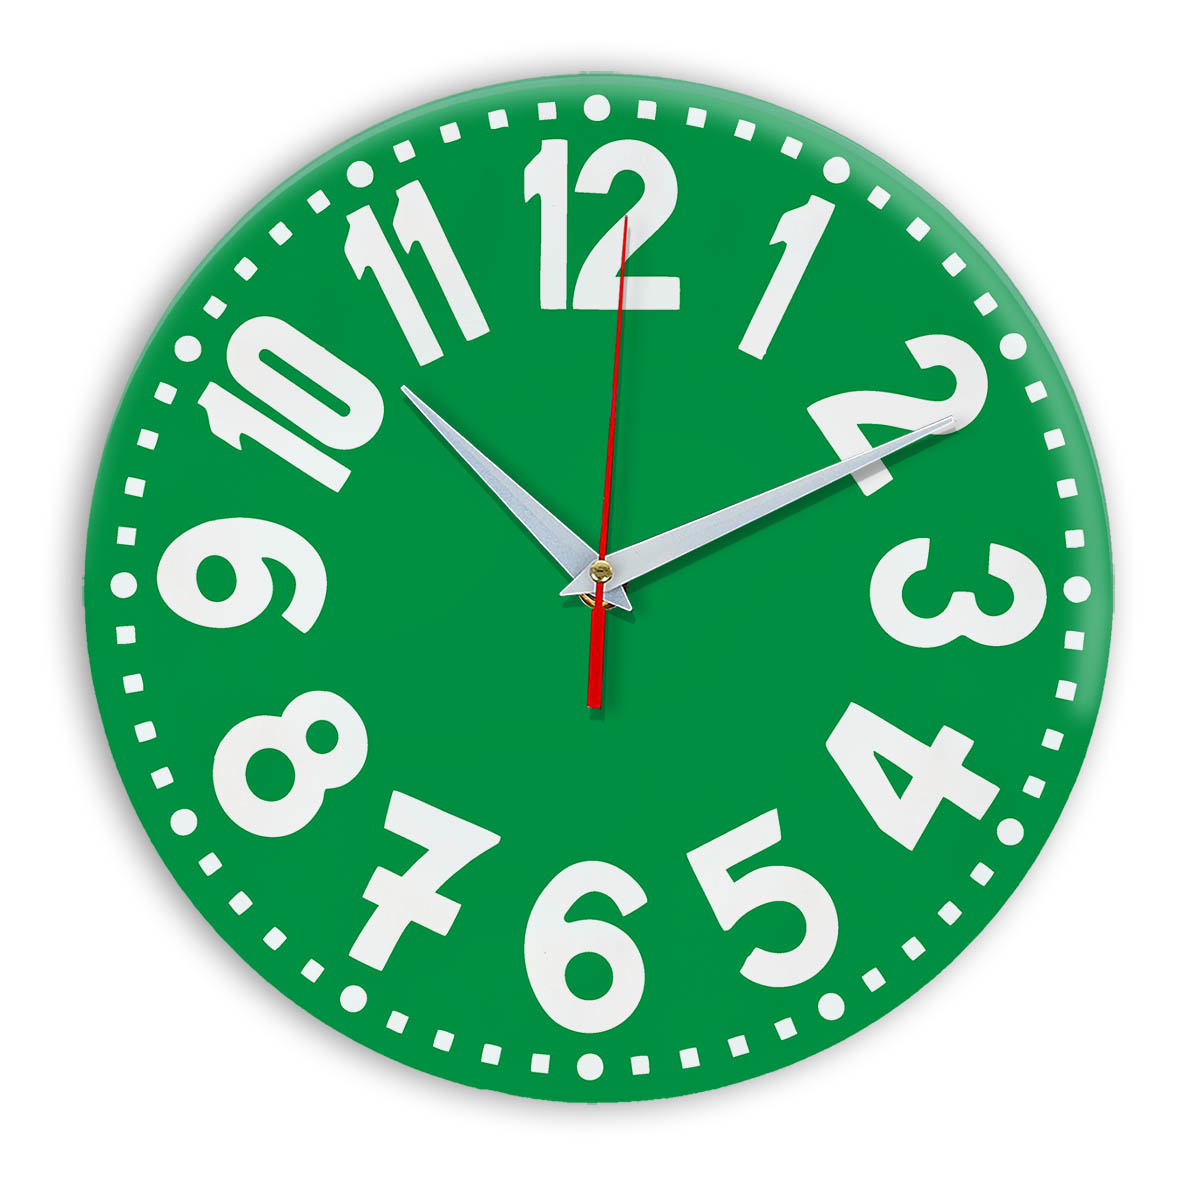 Часы в грине. Часы настенные. Часы зеленые. Настенные часы, зеленый. Часы настенные зеленого цвета.